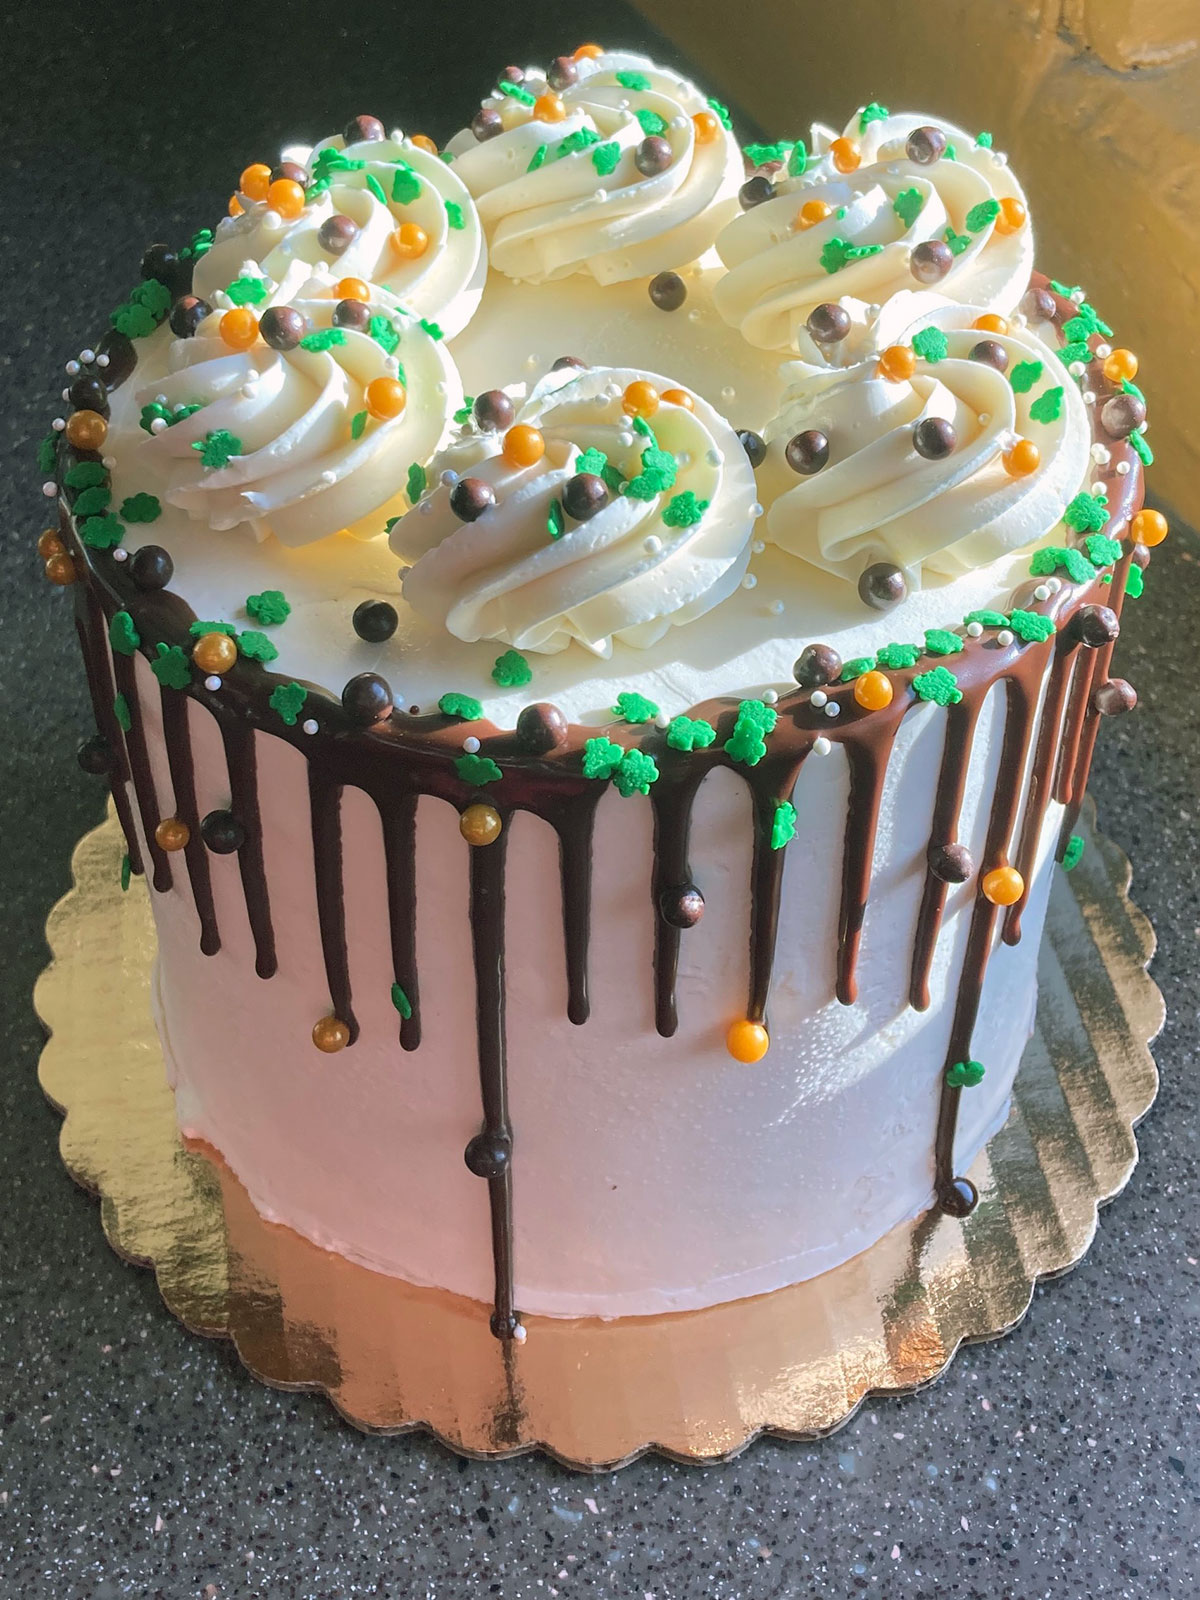 Irish themed cake | Irish birthday cake, St patricks day cakes, Irish cake